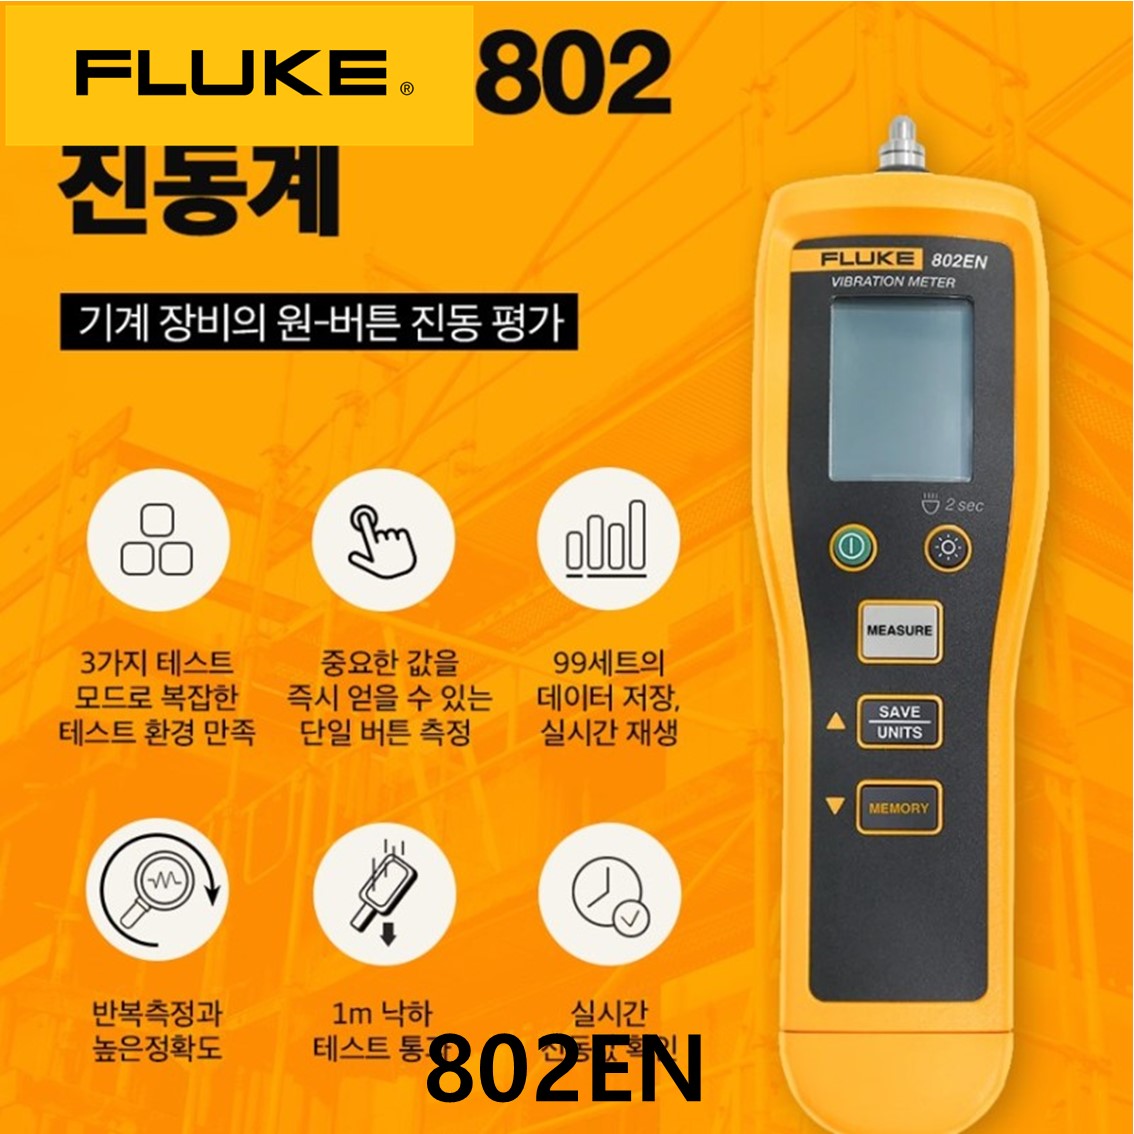 [ FLUKE 802EN ] 정품 플루크 보급형 진동계 802